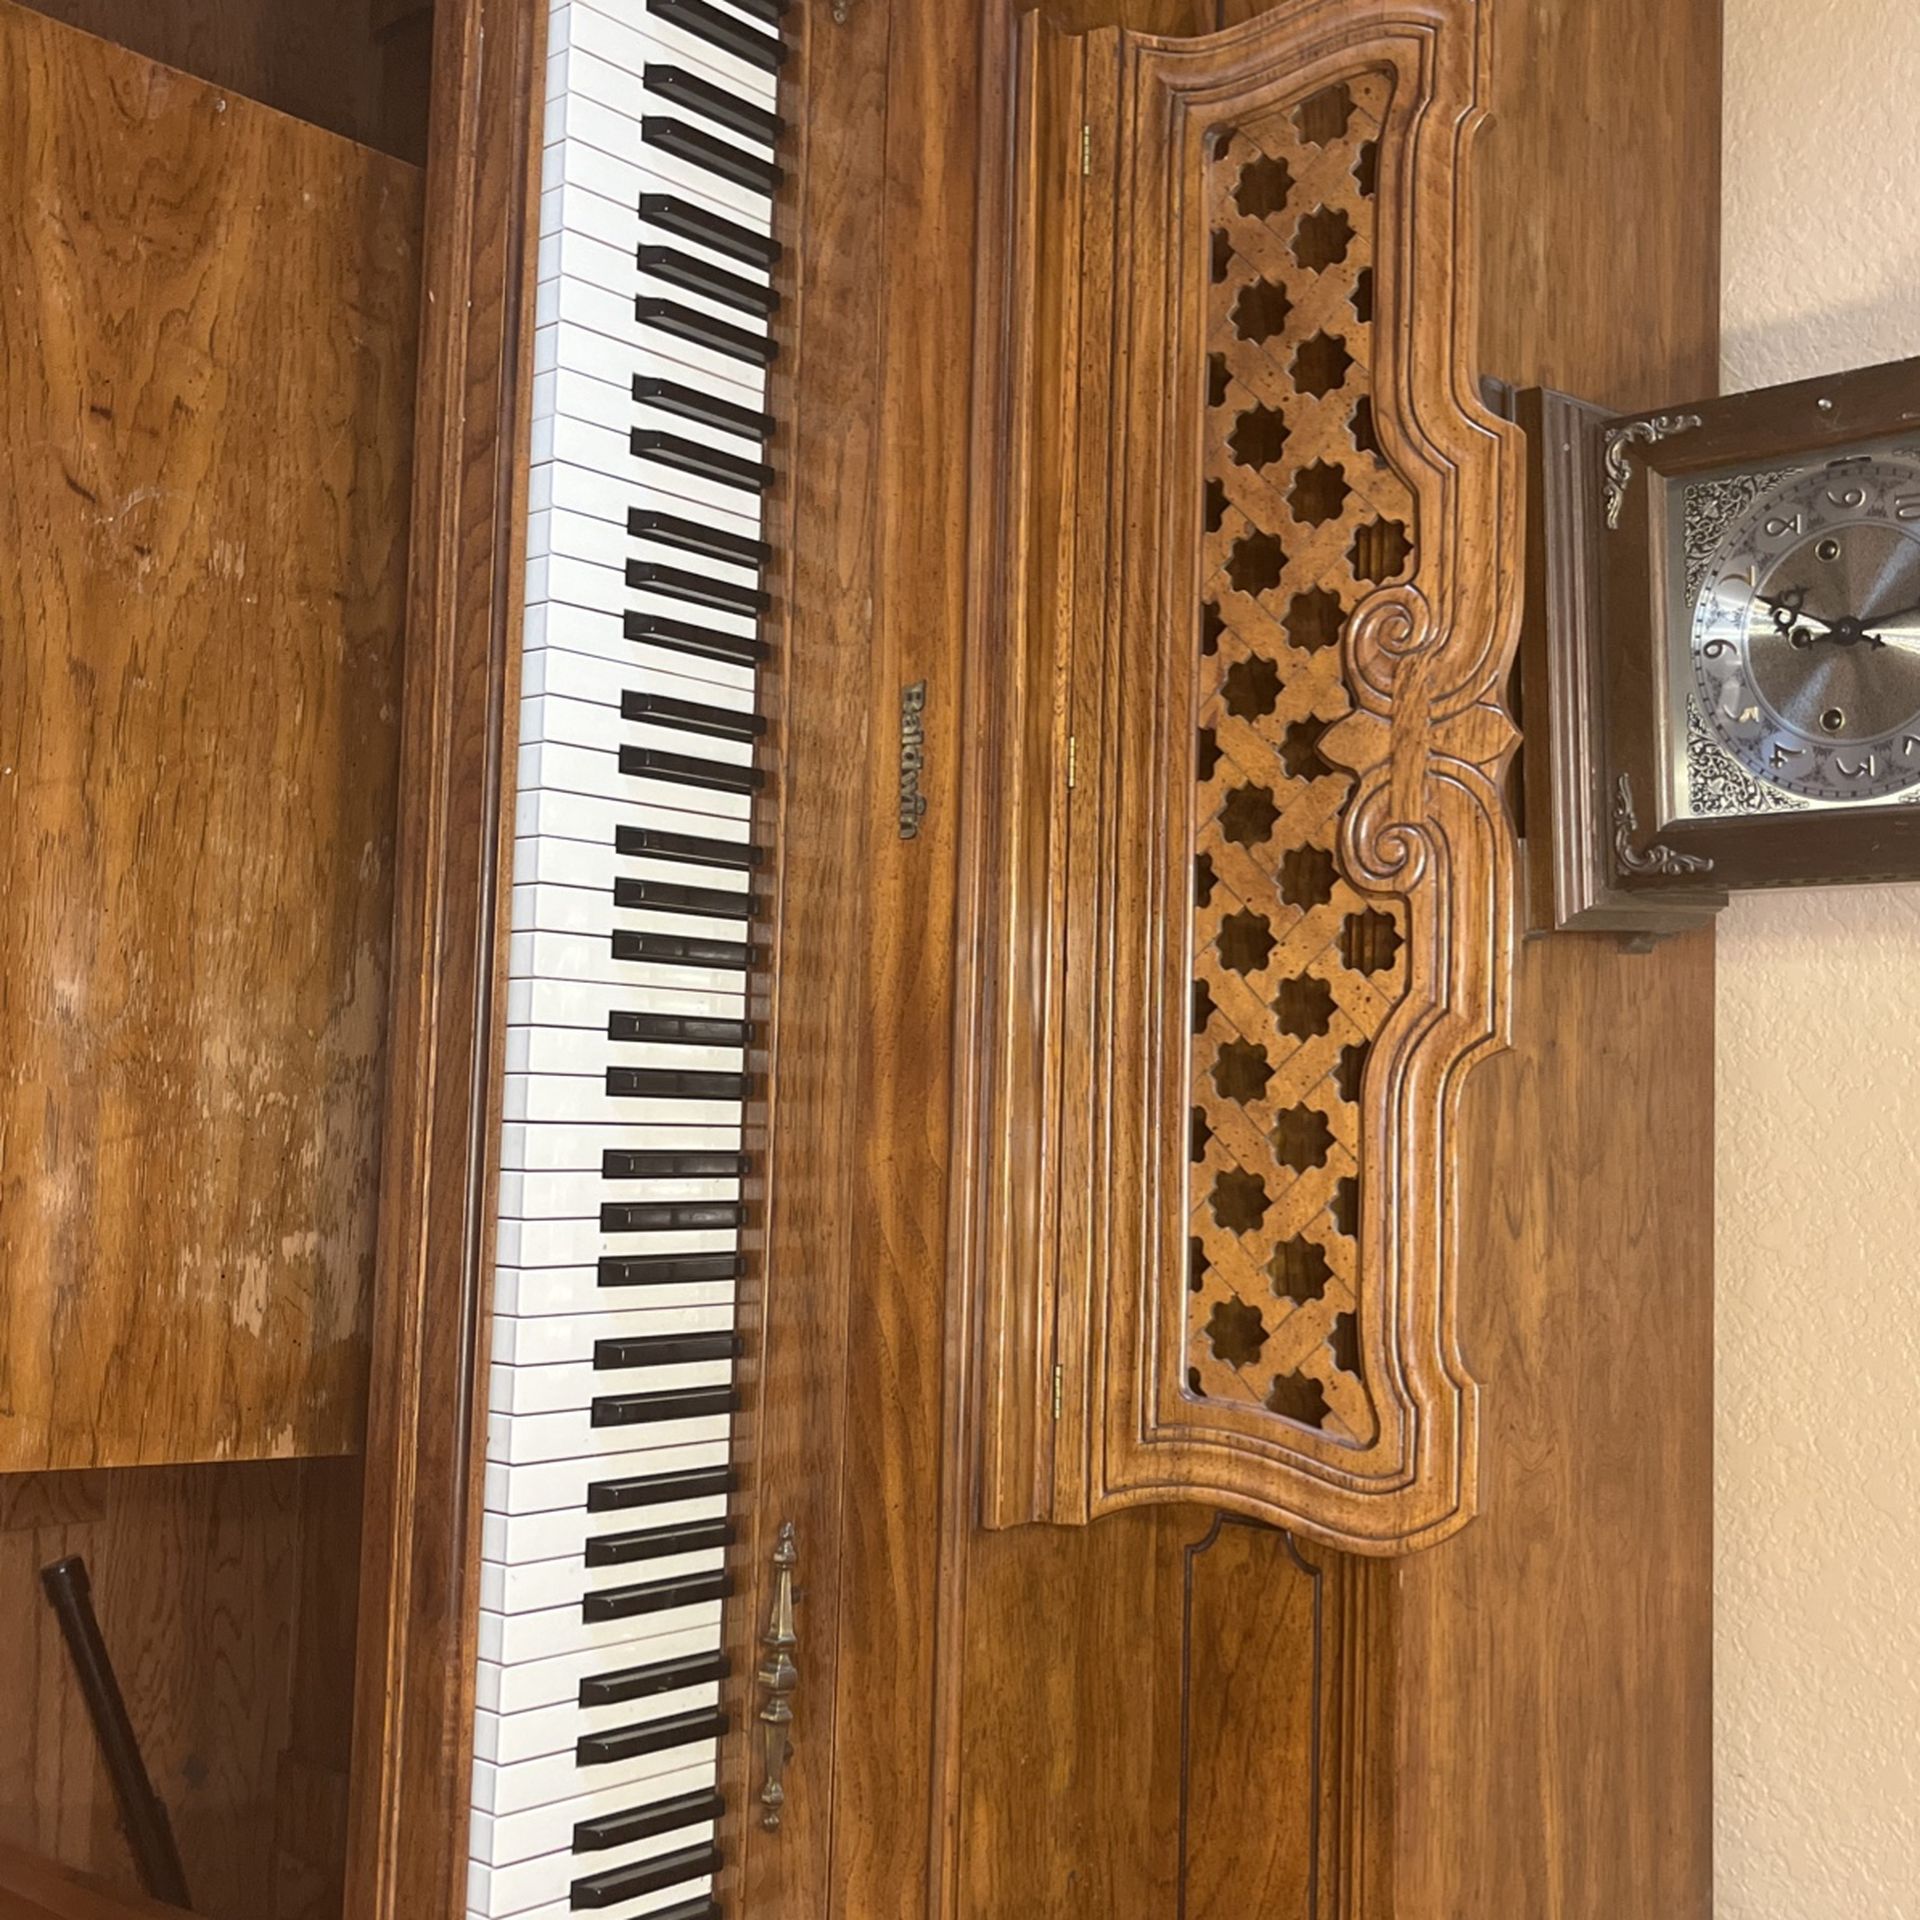 Antique Baldwin Piano Good Condition